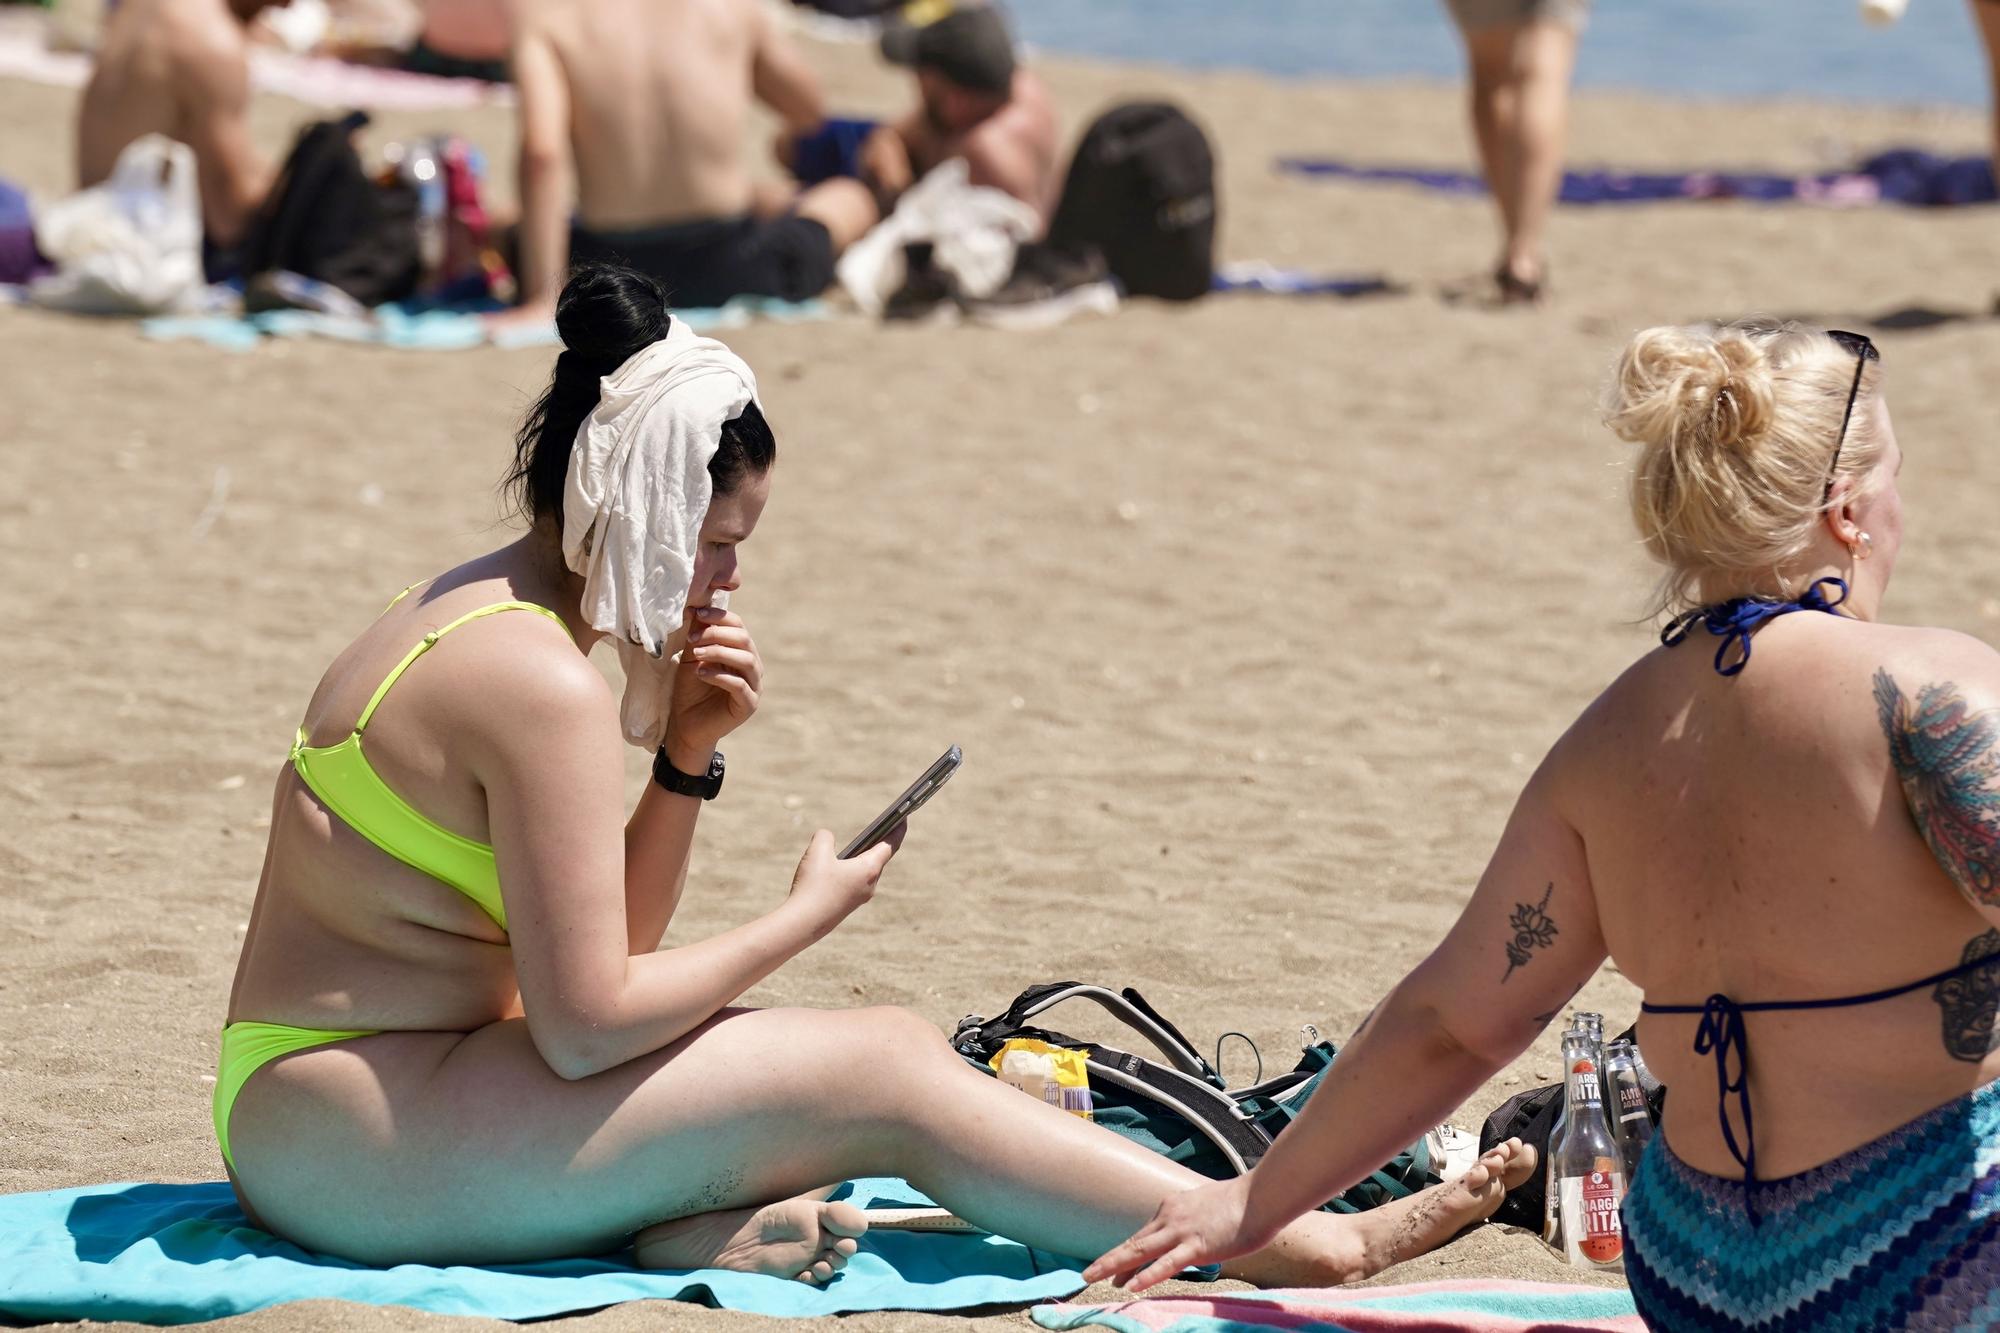 Bañistas y turistas disfrutan del sol y el calor en la playa de La Malagueta a mediados de abril.
